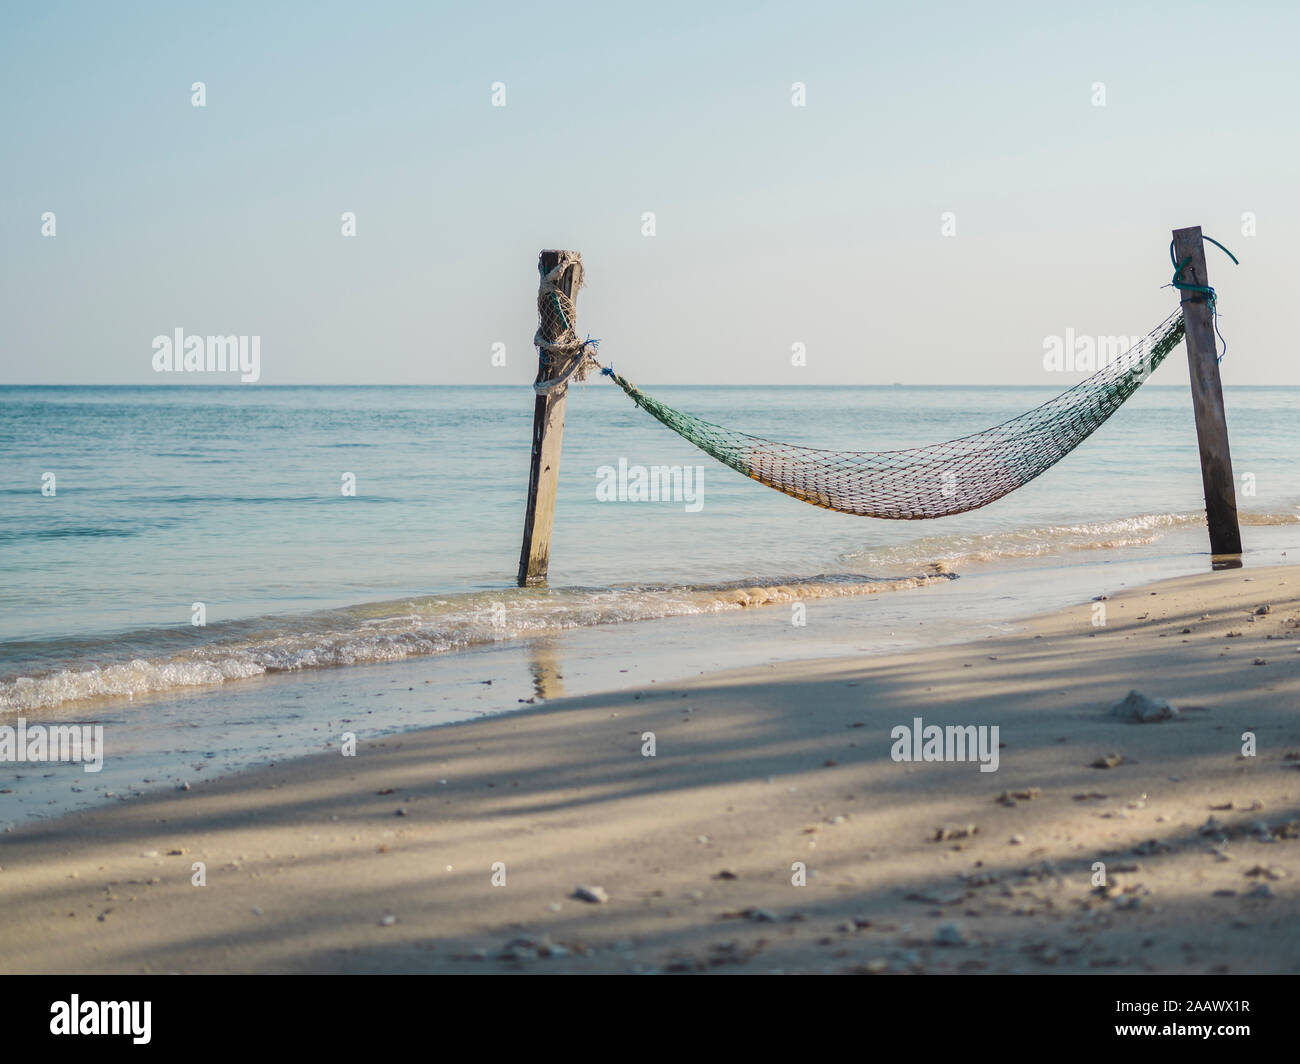 Indonesia, Bali, isole Gili, Gili Air, pesca net amaca sulla spiaggia vista sulla tranquilla giornata Foto Stock